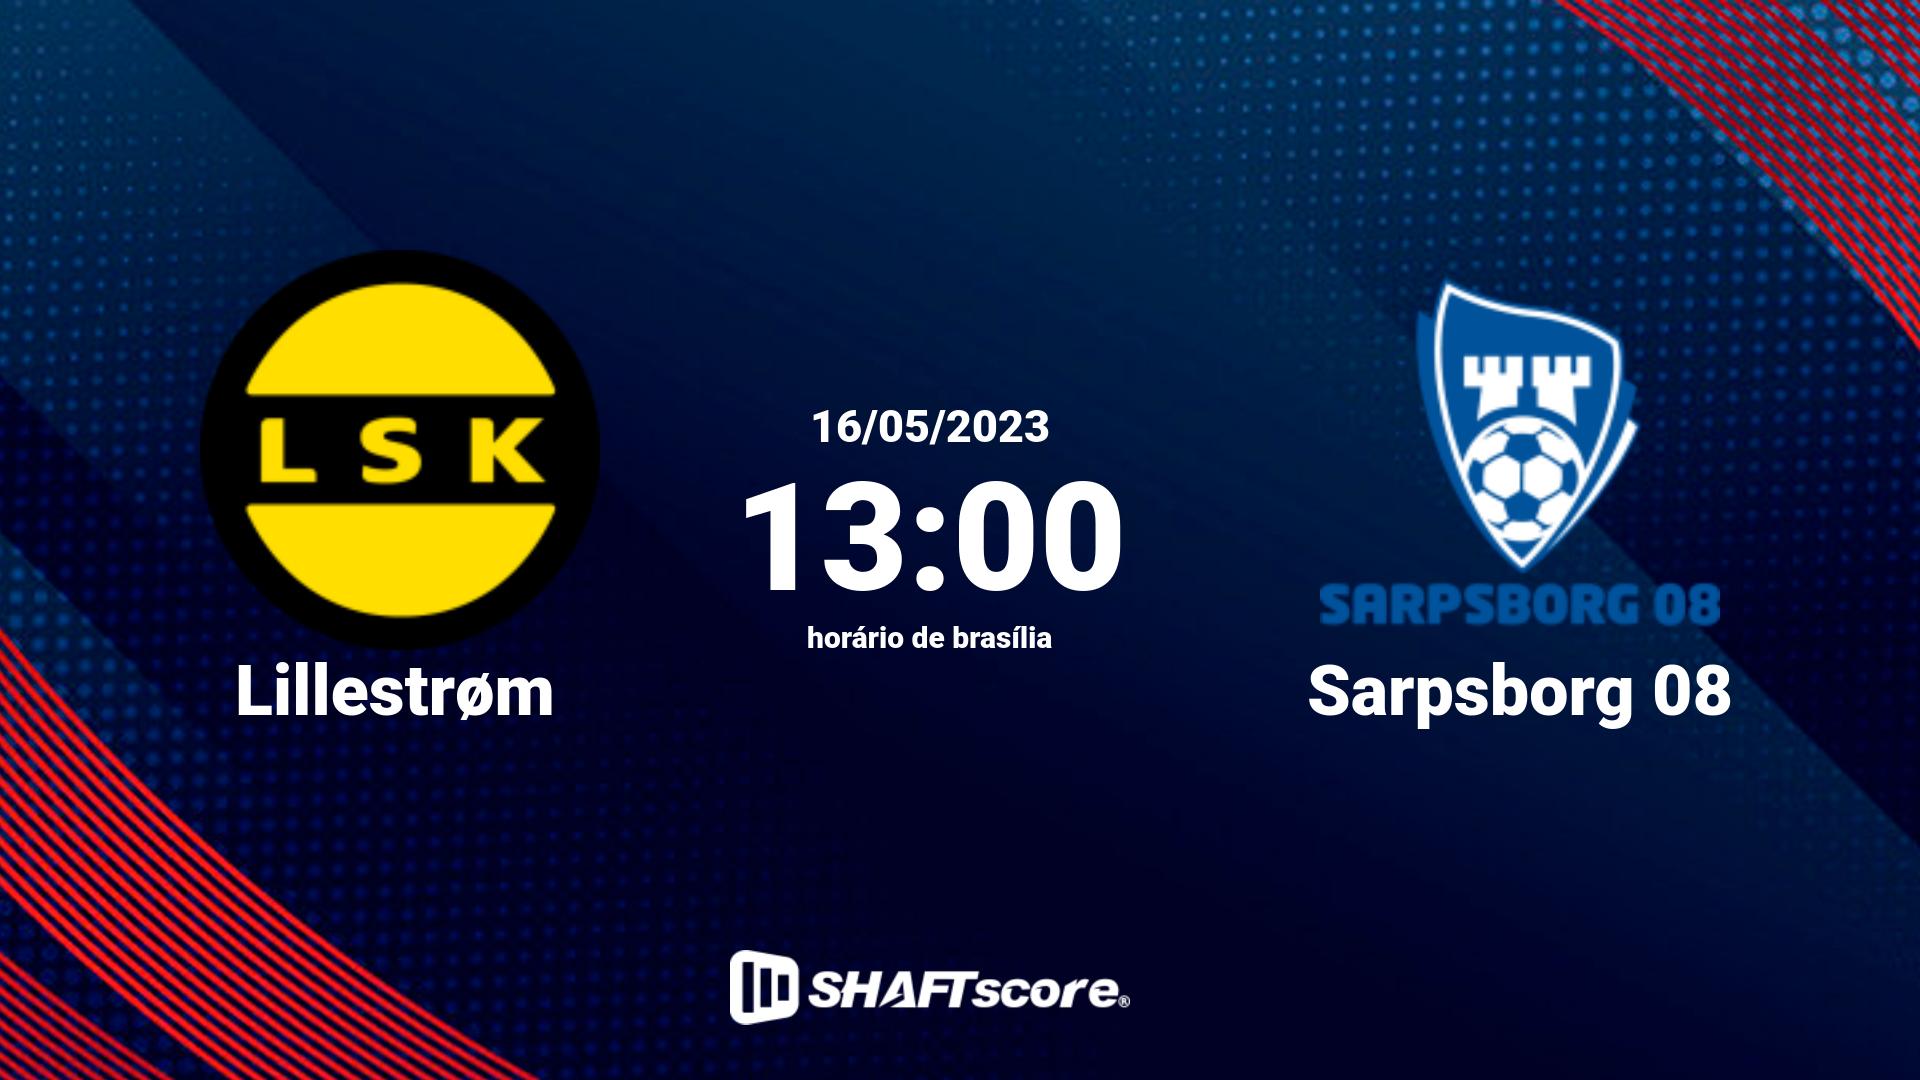 Estatísticas do jogo Lillestrøm vs Sarpsborg 08 16.05 13:00